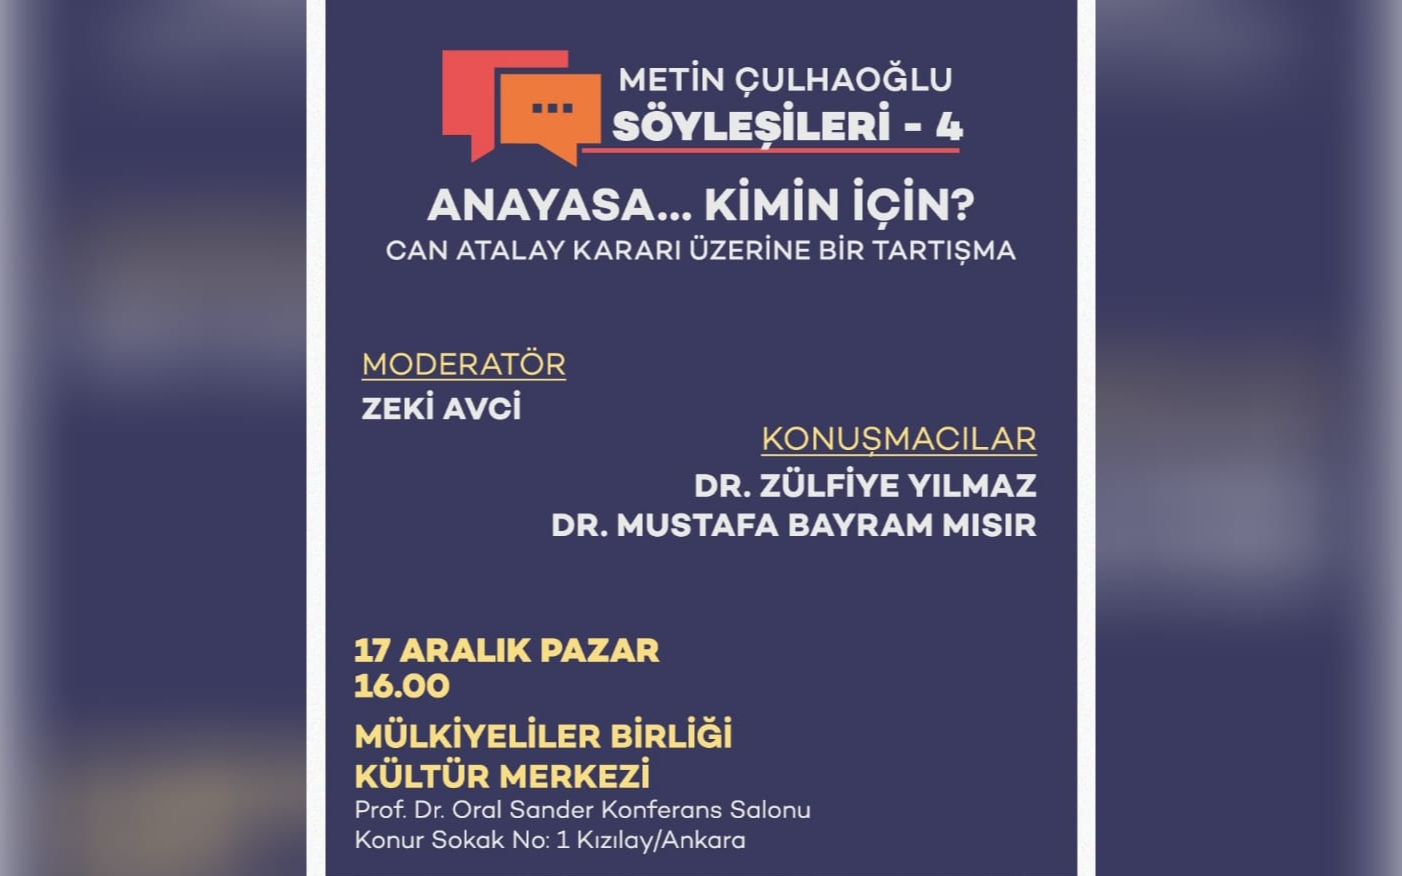 Metin Çulhaoğlu söyleşilerinin dördüncüsü 17 Aralık'ta düzenlenecek